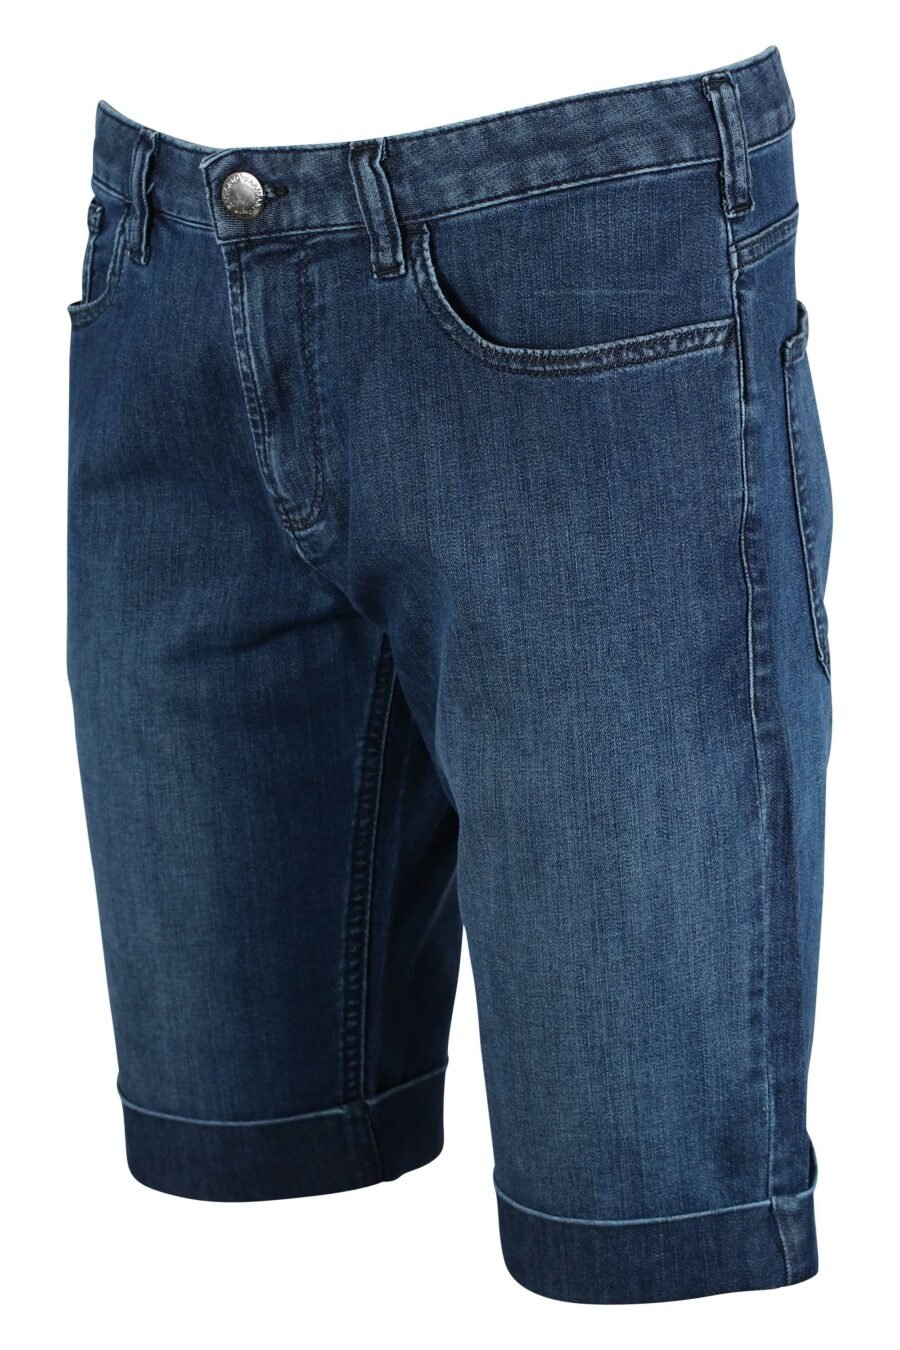 Pantalón vaquero azul corto con minilogo en metal - IMG 9494